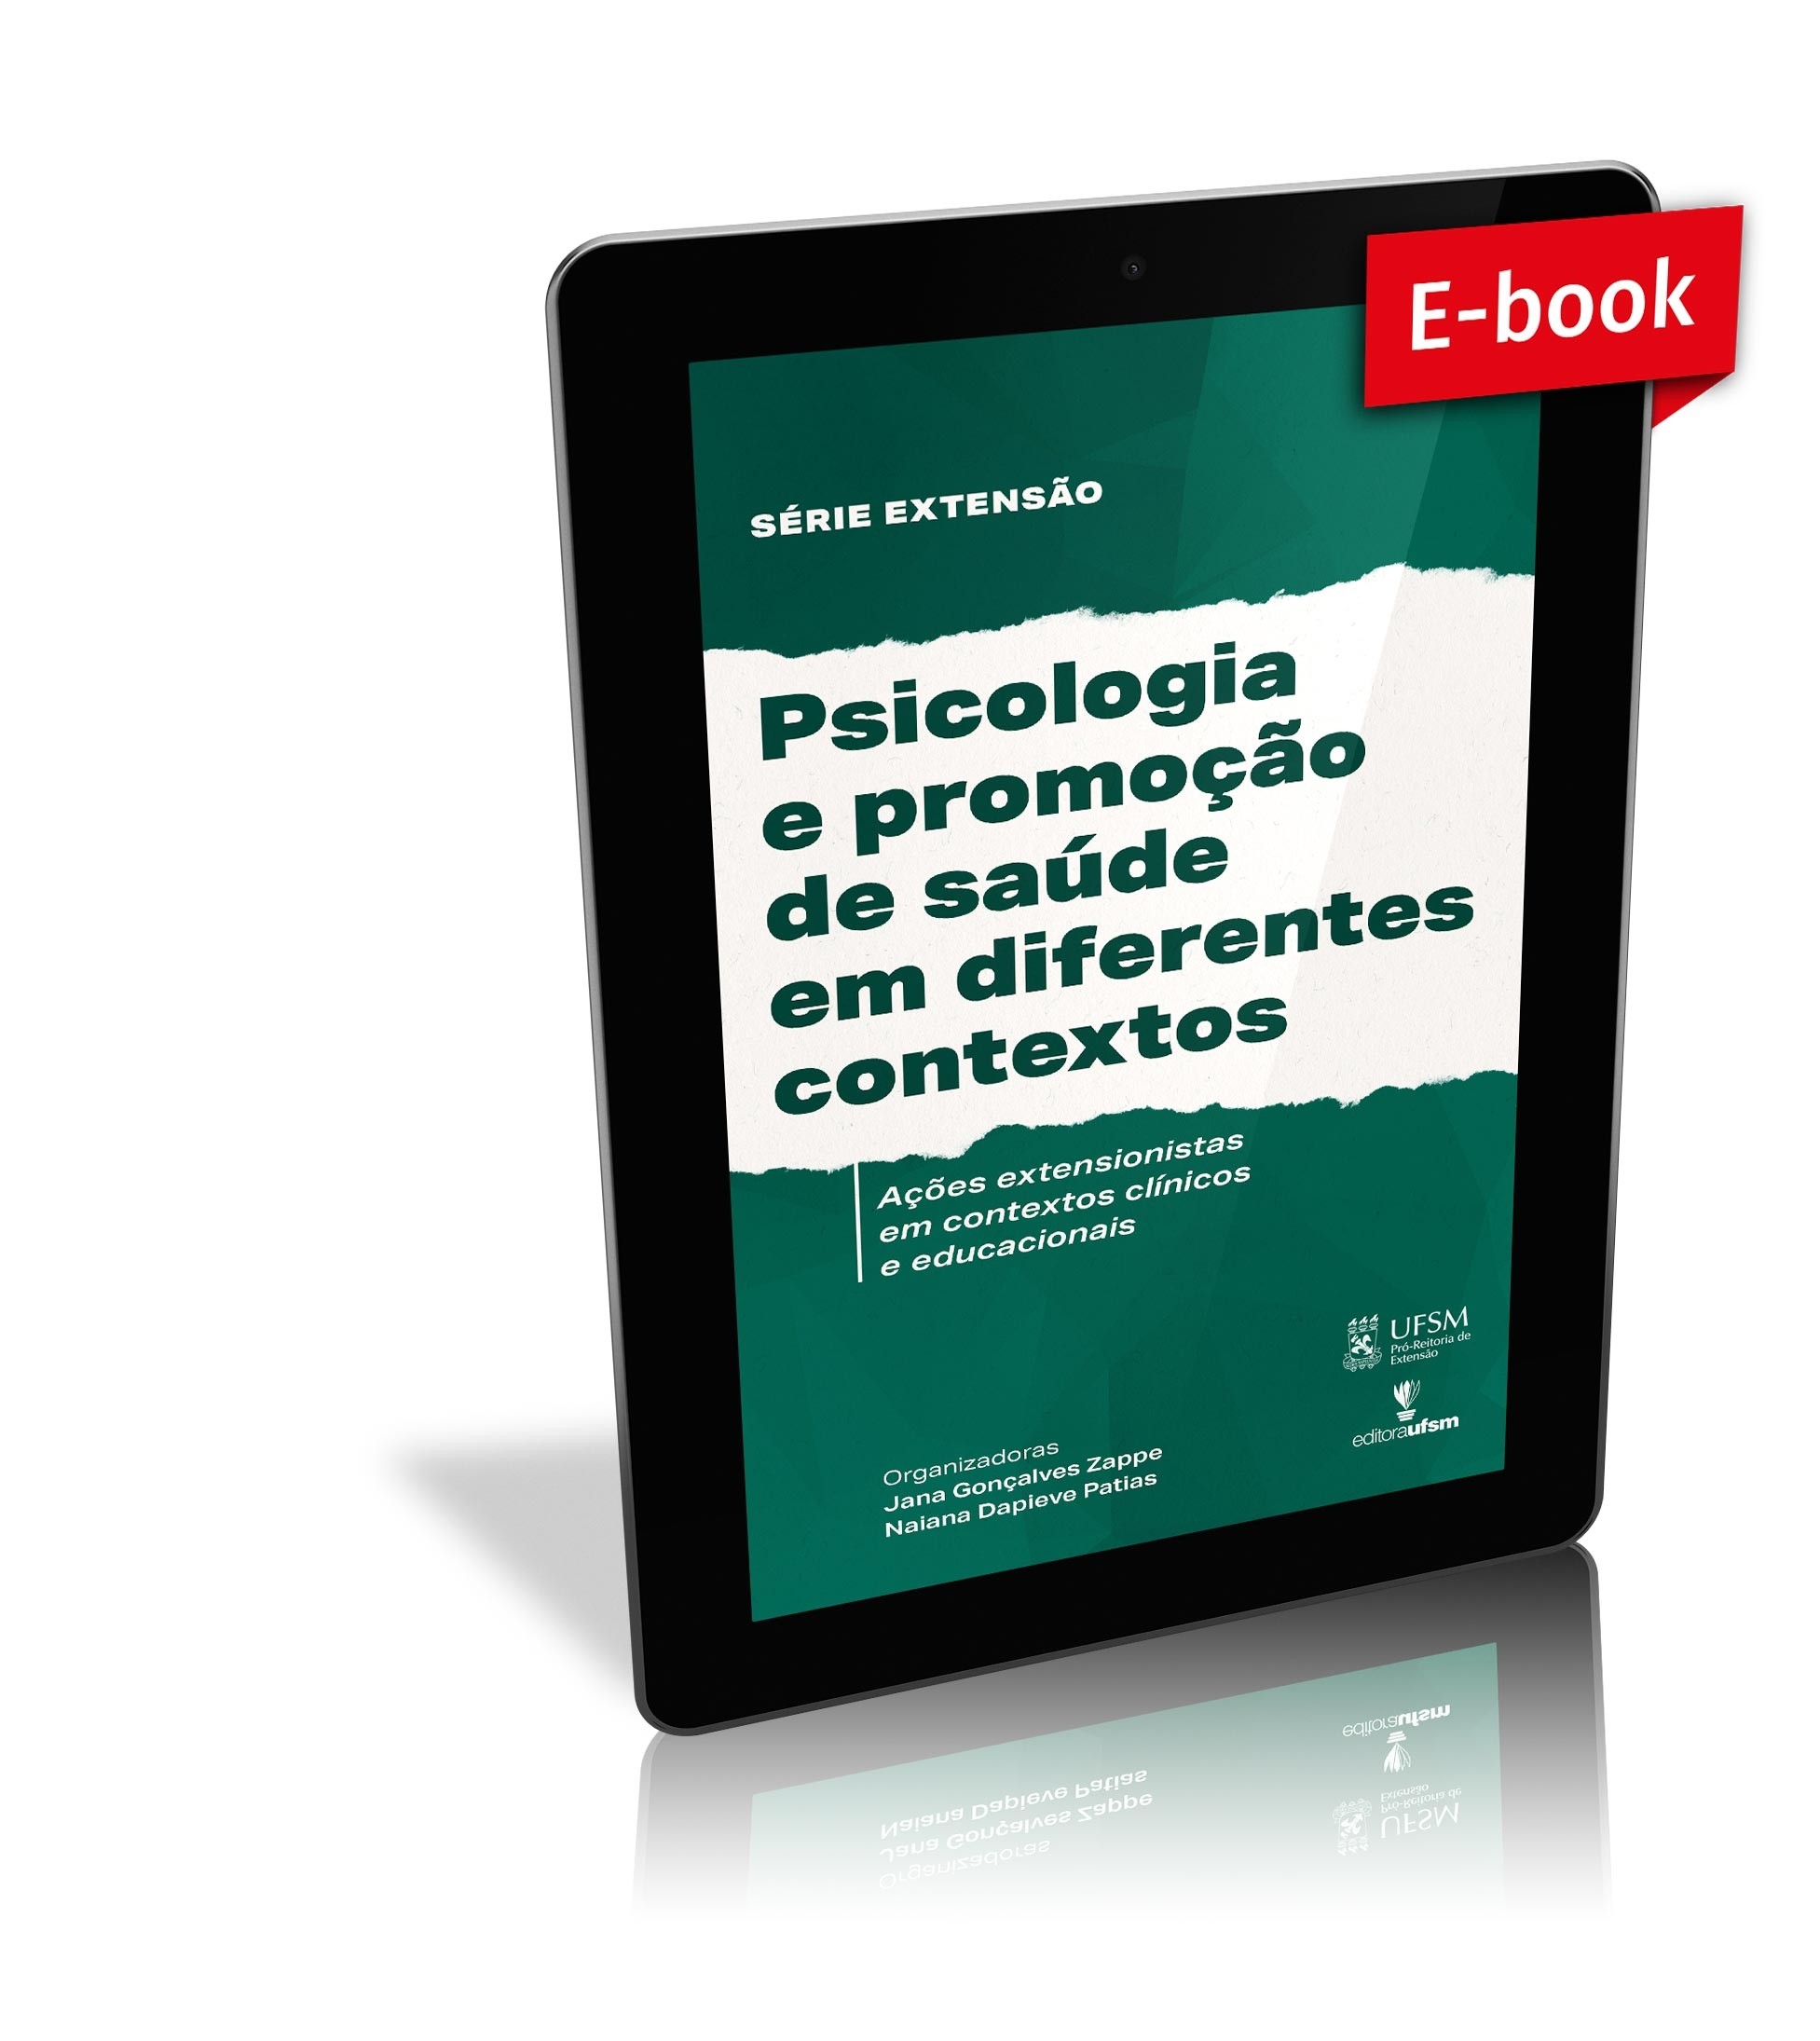 Capa do ebook Psicologia e promoção de saúde em diferentes contextos